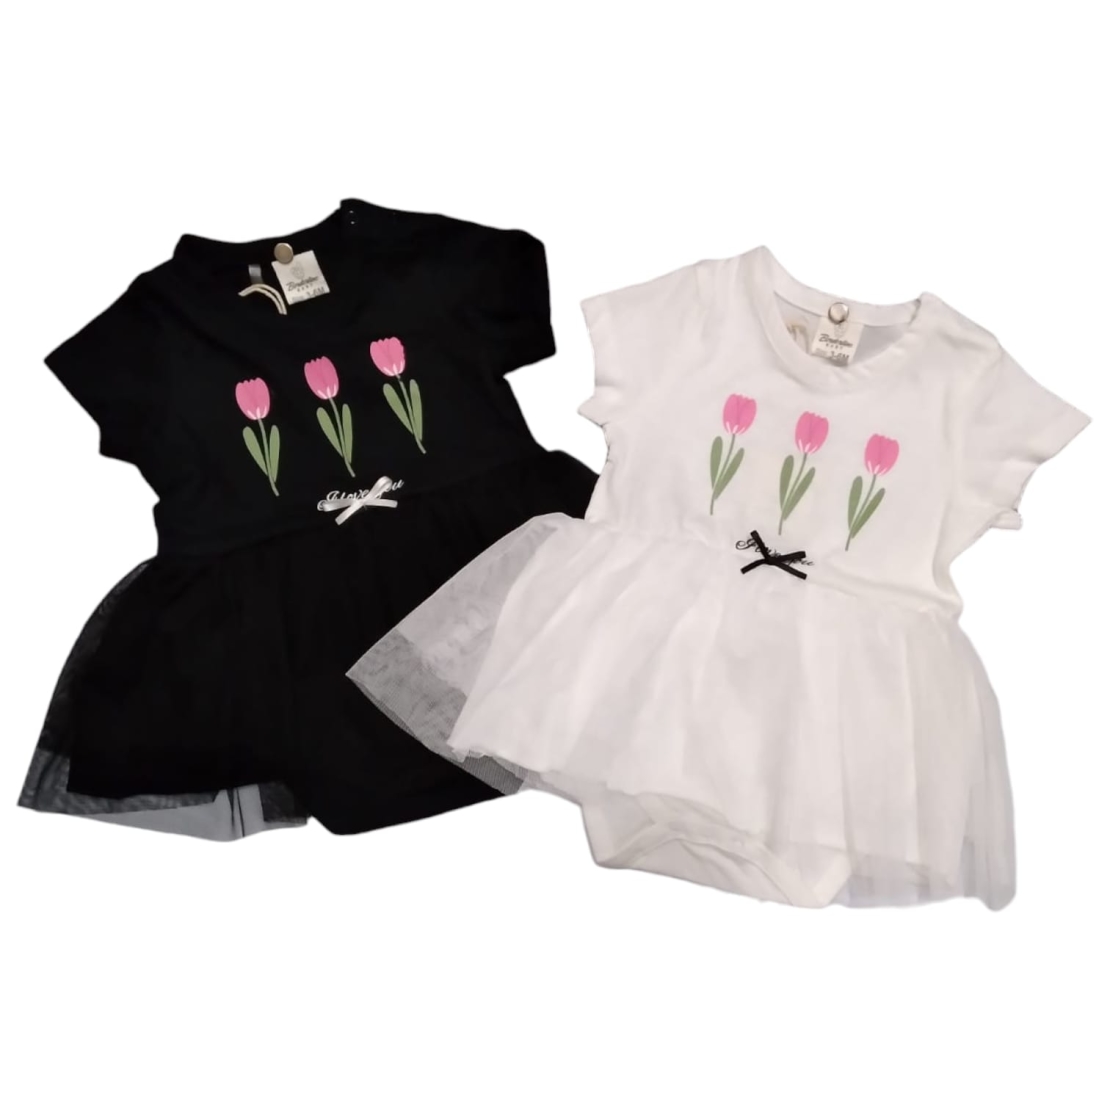 בגד גוף שמלה פרחים (לבן/שחור) 3-24M תינוקות בנות